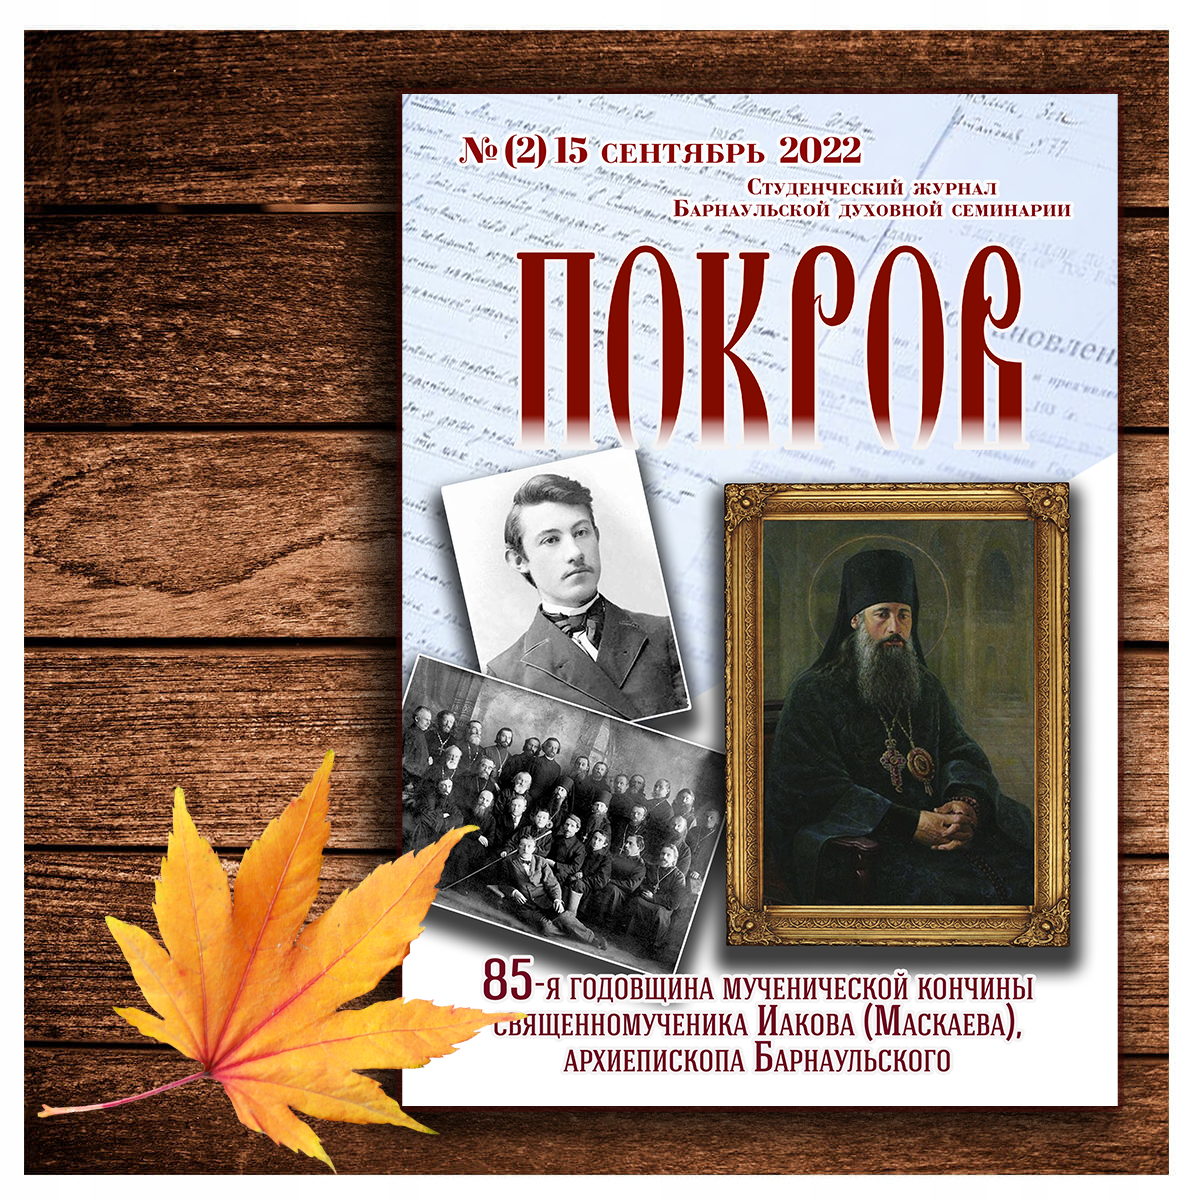 Вышел в свет очередной номер студенческого журнала Барнаульской духовной семинарии «Покров» (2)15 сентябрь 2022